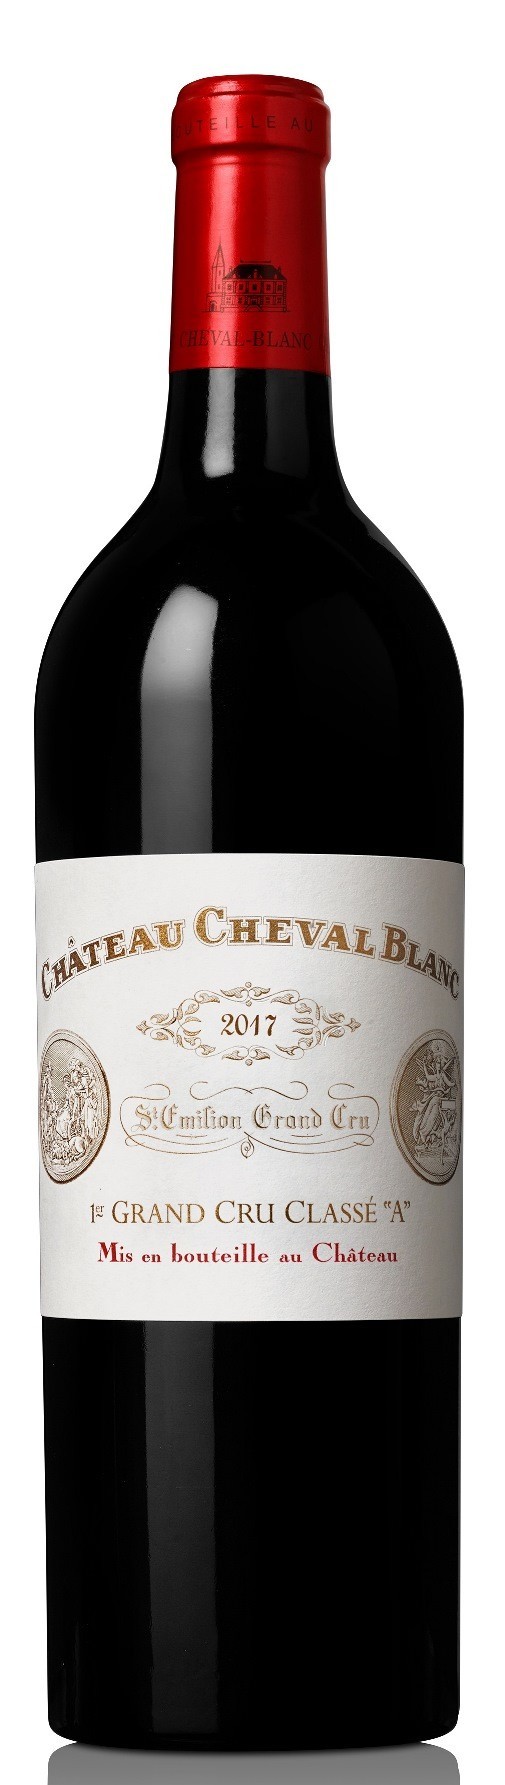 Chateau Cheval Blanc 1958, Saint Émilion